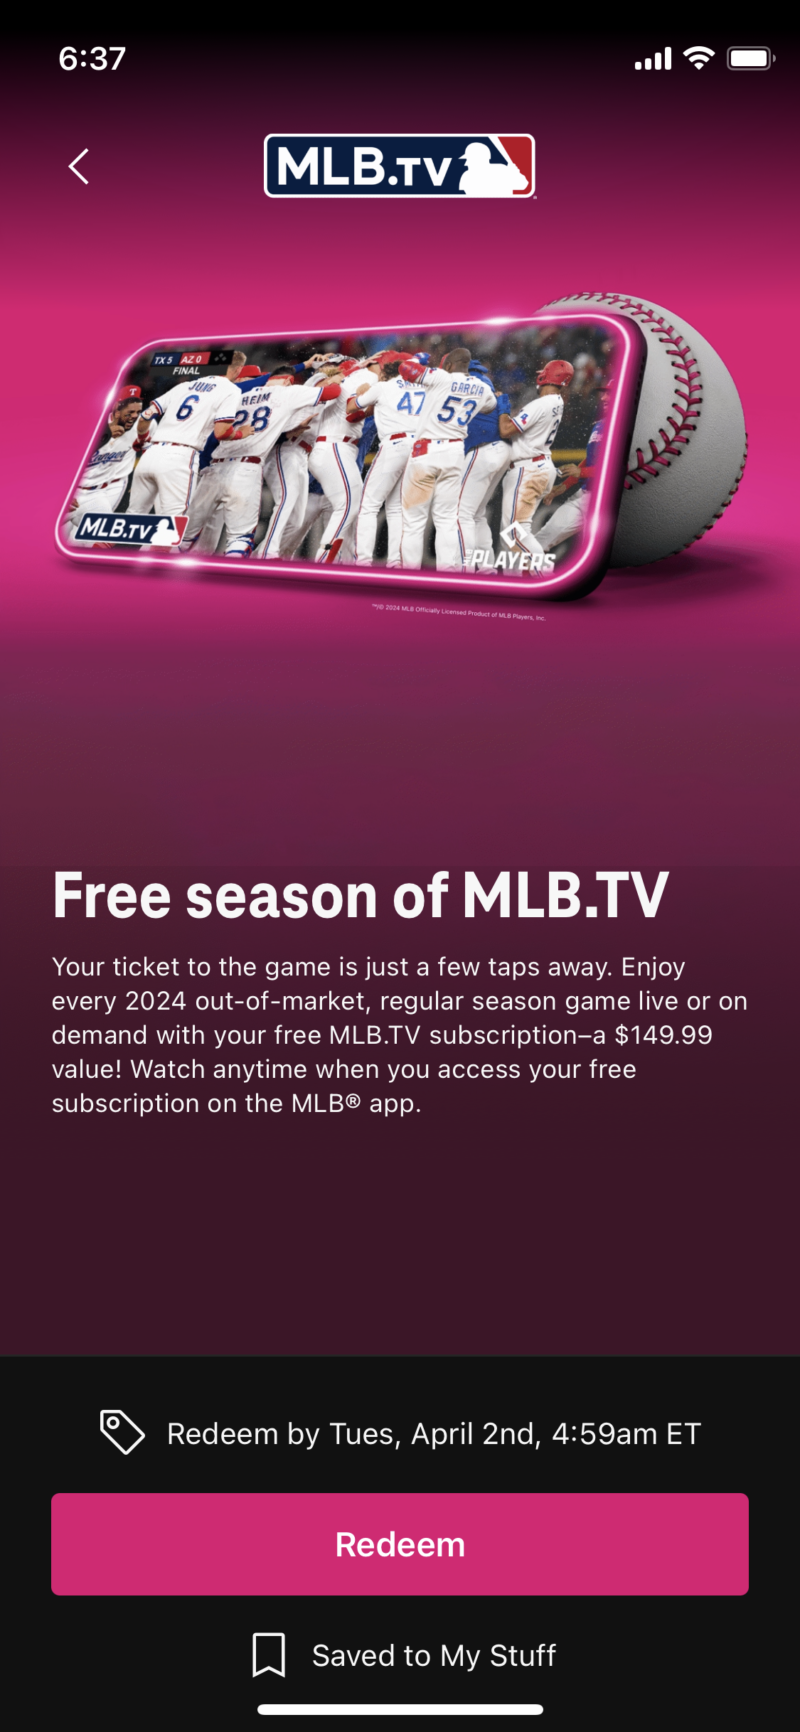 リマインダー - T-Mobile の無料 MLB.TV シーズン パスは有効です